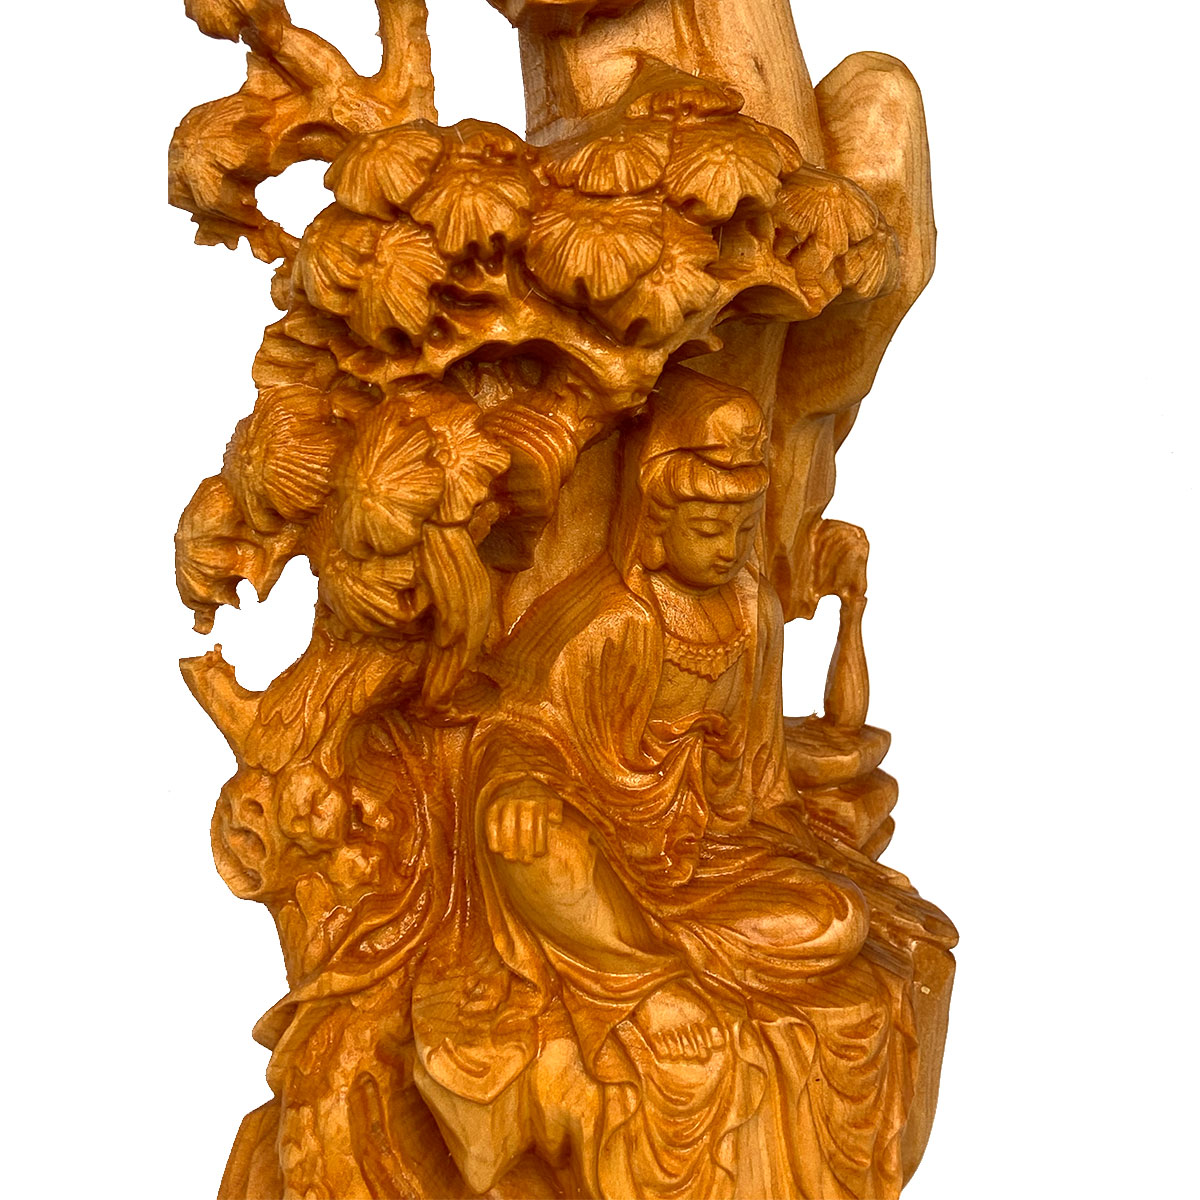 話題の行列木彫り 仏像 観音様 観音菩薩像 観音菩薩 立像 仏教美術